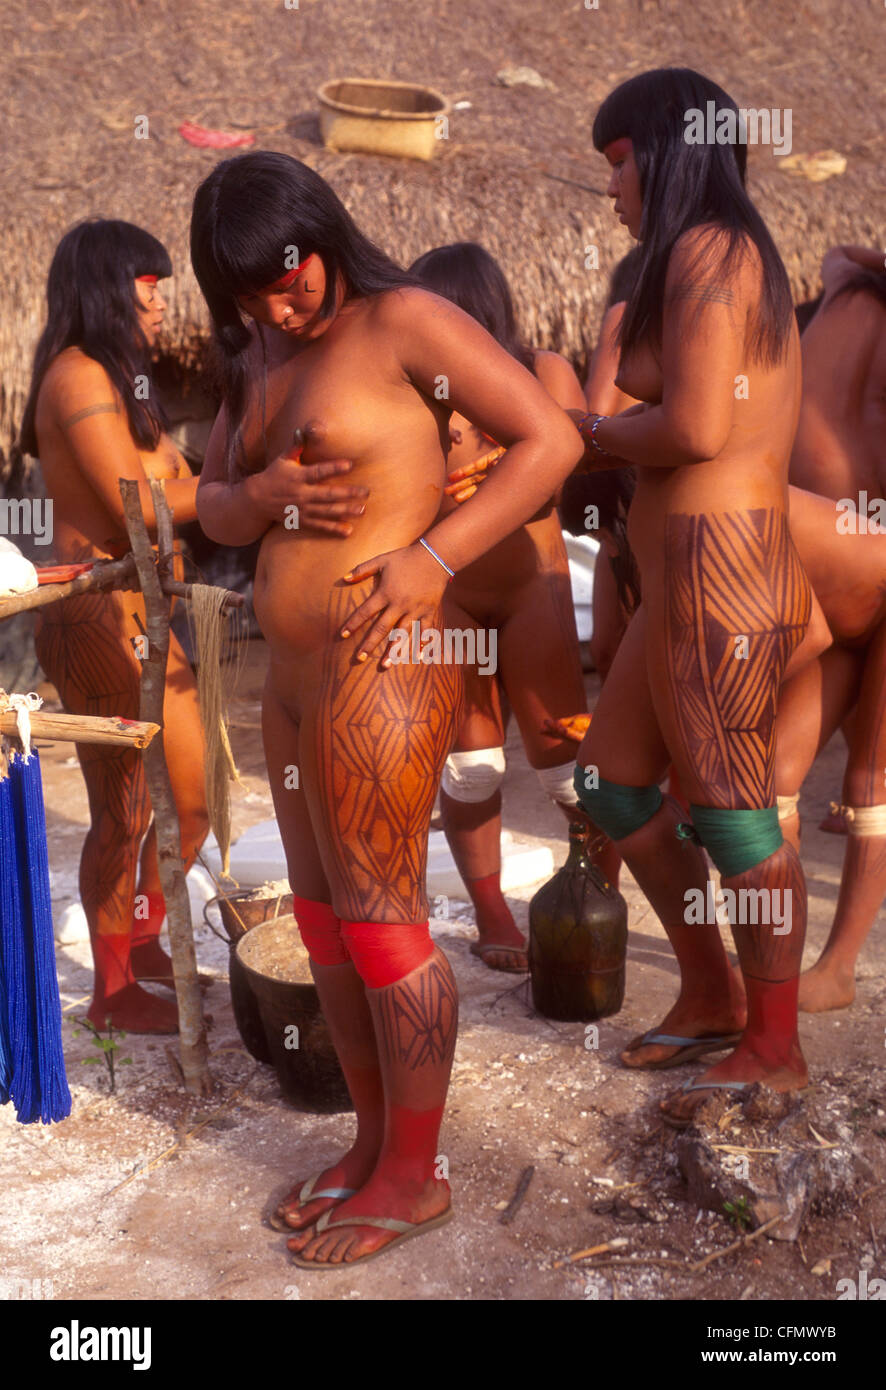 Бесплатные секси фото:племена людоедов жесть